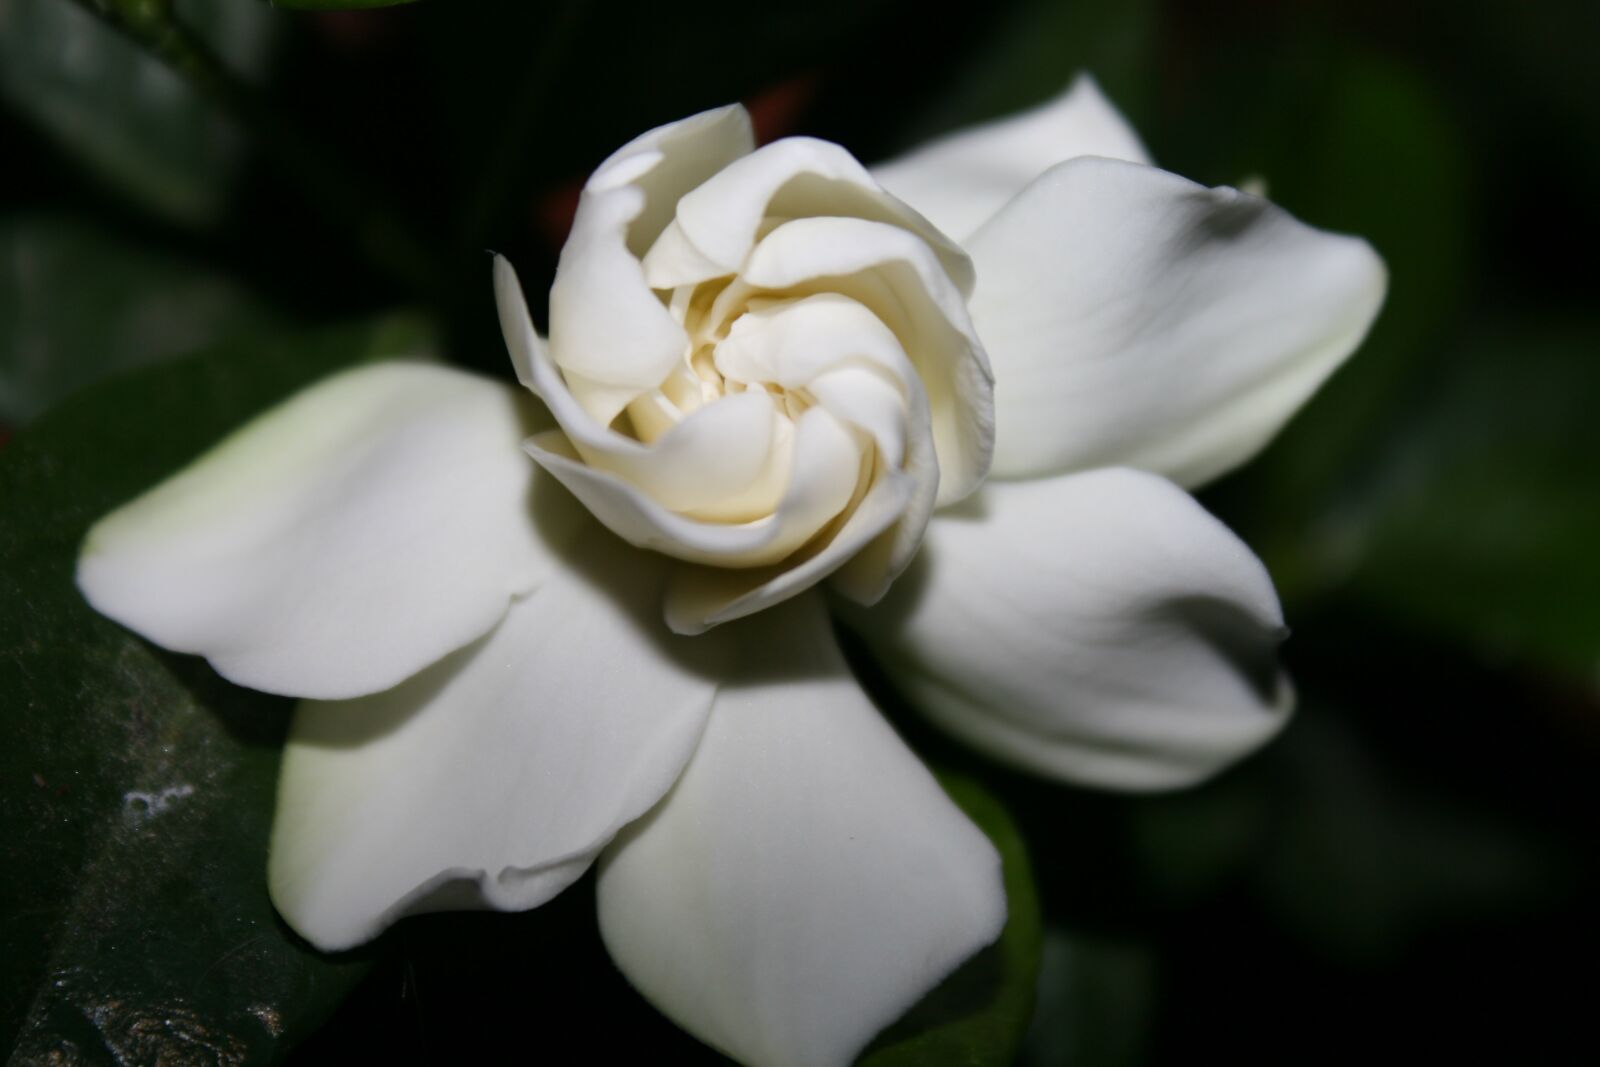 Canon EOS 30D sample photo. Flower, cape jasmine, gardenia photography